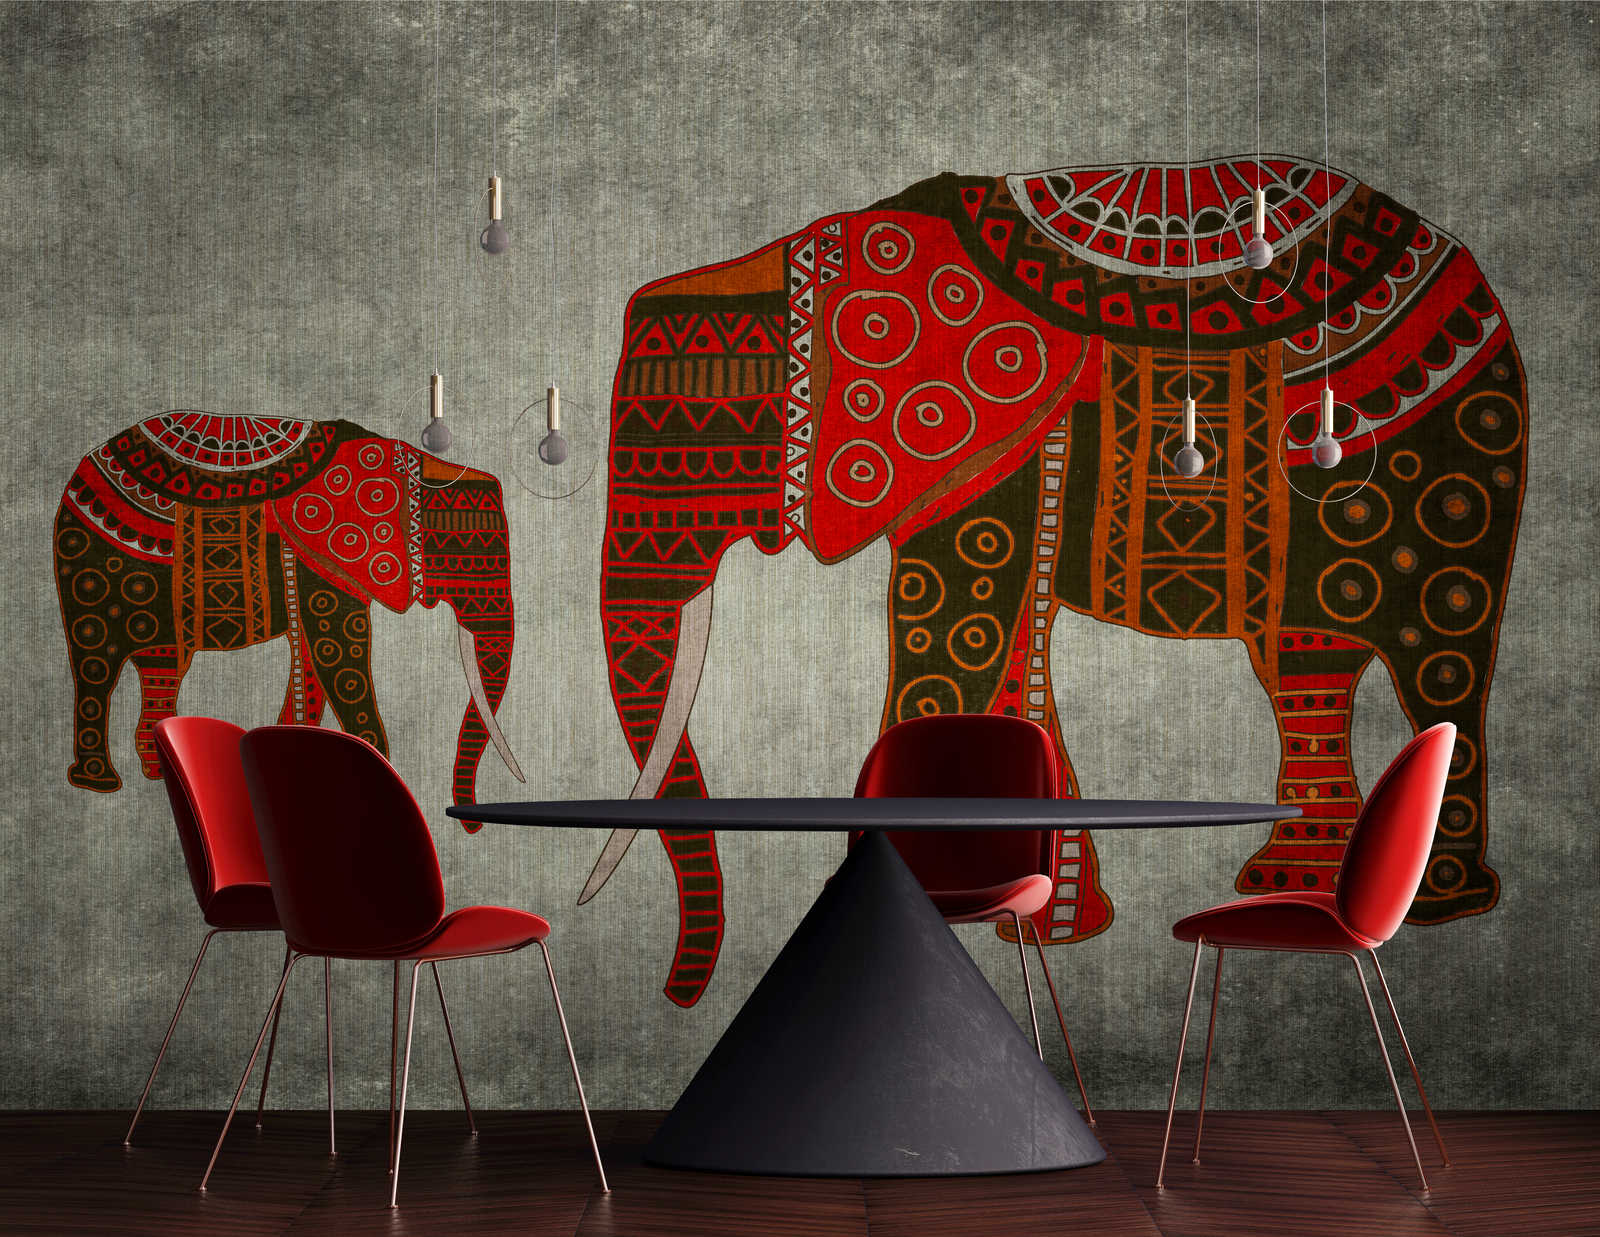             Nairobi 4 - Papier peint éléphant avec motifs ethniques et effet texturé
        